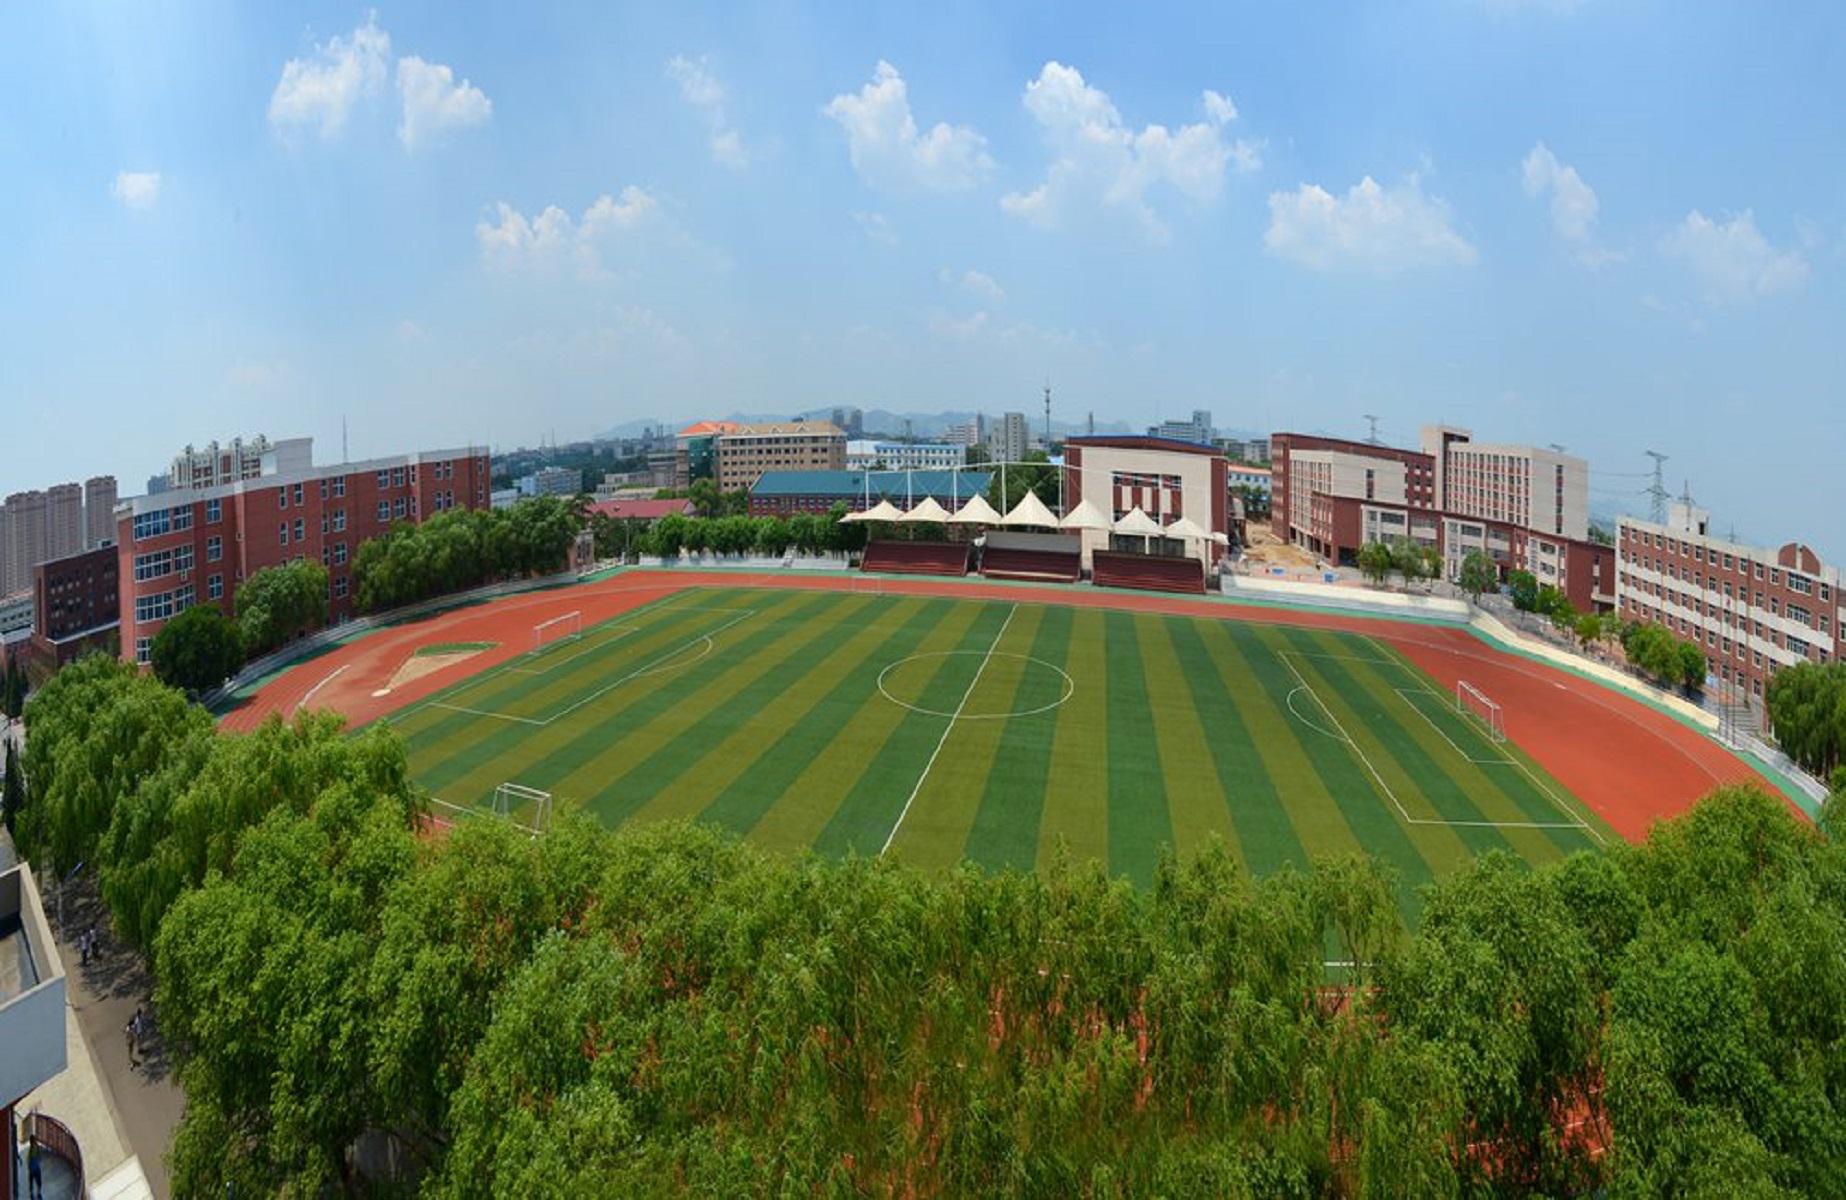 辽宁铁道职业技术学院2011年9月,学校成功召开了辽宁铁道职业技术学院